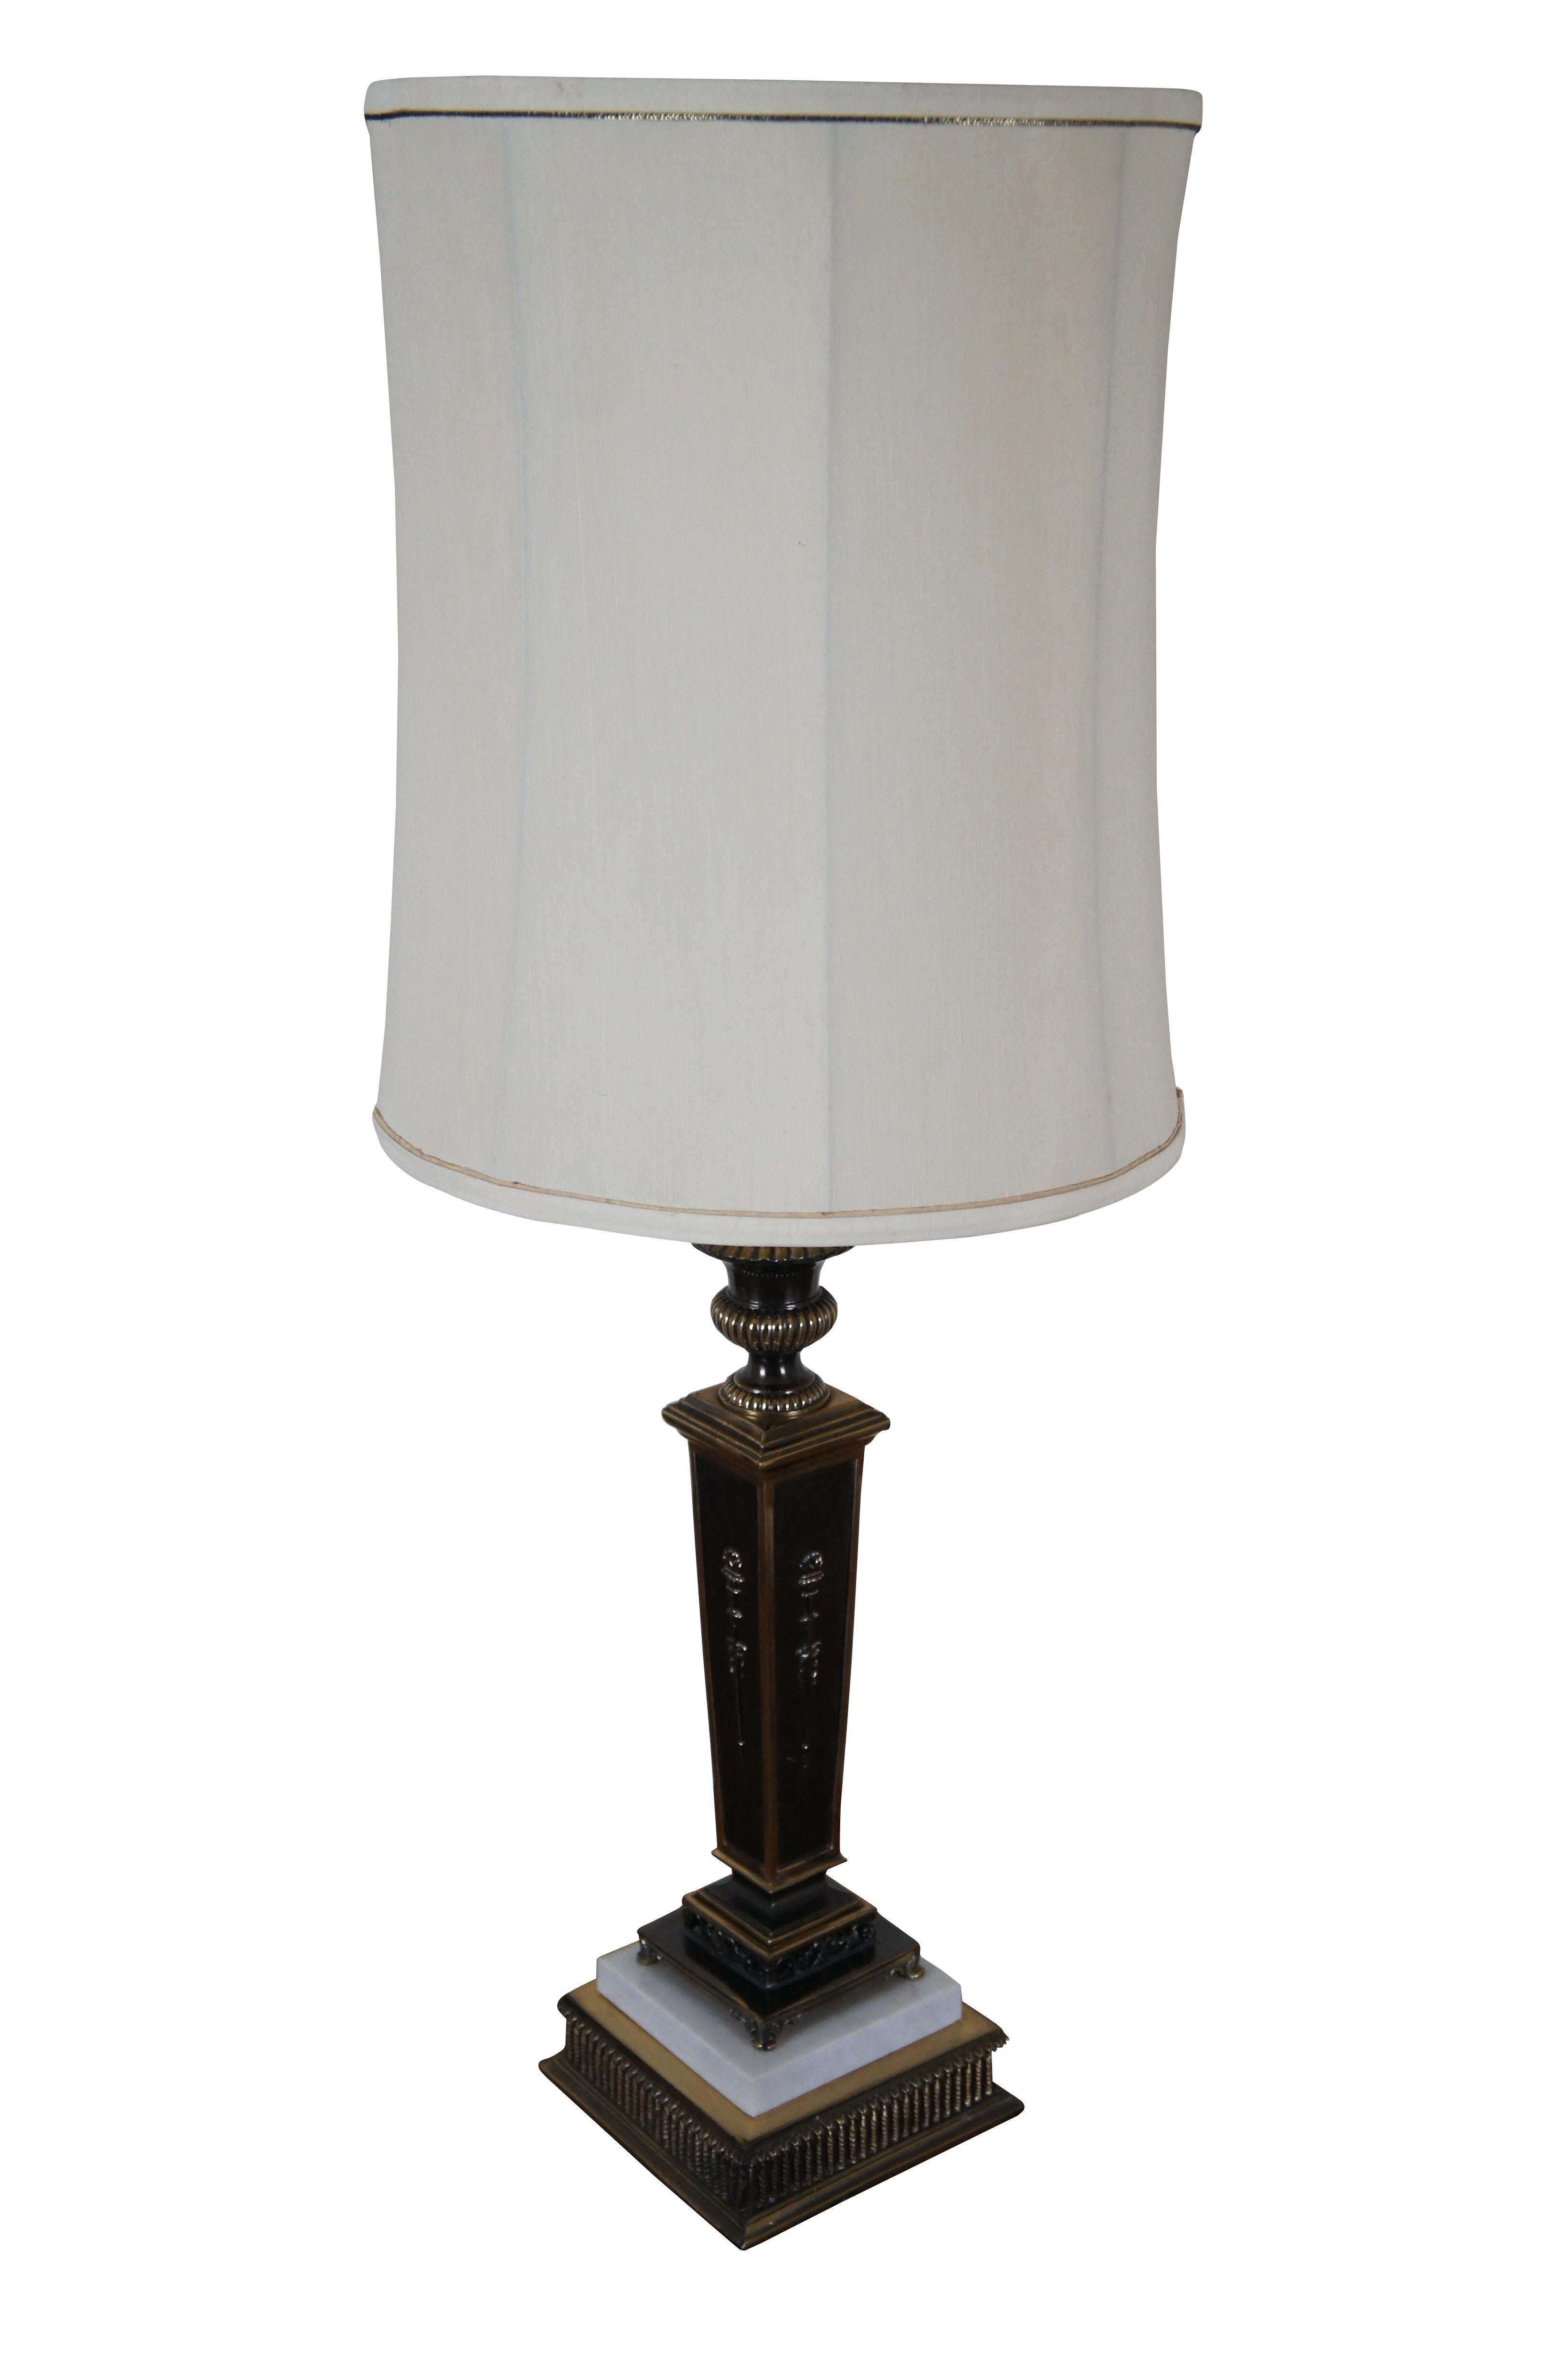 Lampe de table en forme de torchère / colonne carrée / chandelier de style Empire vintage, fabriquée en laiton avec des accents sombres et du marbre blanc sur la base. Comprend un embout en forme de calotte et un abat-jour cylindrique en tissu blanc